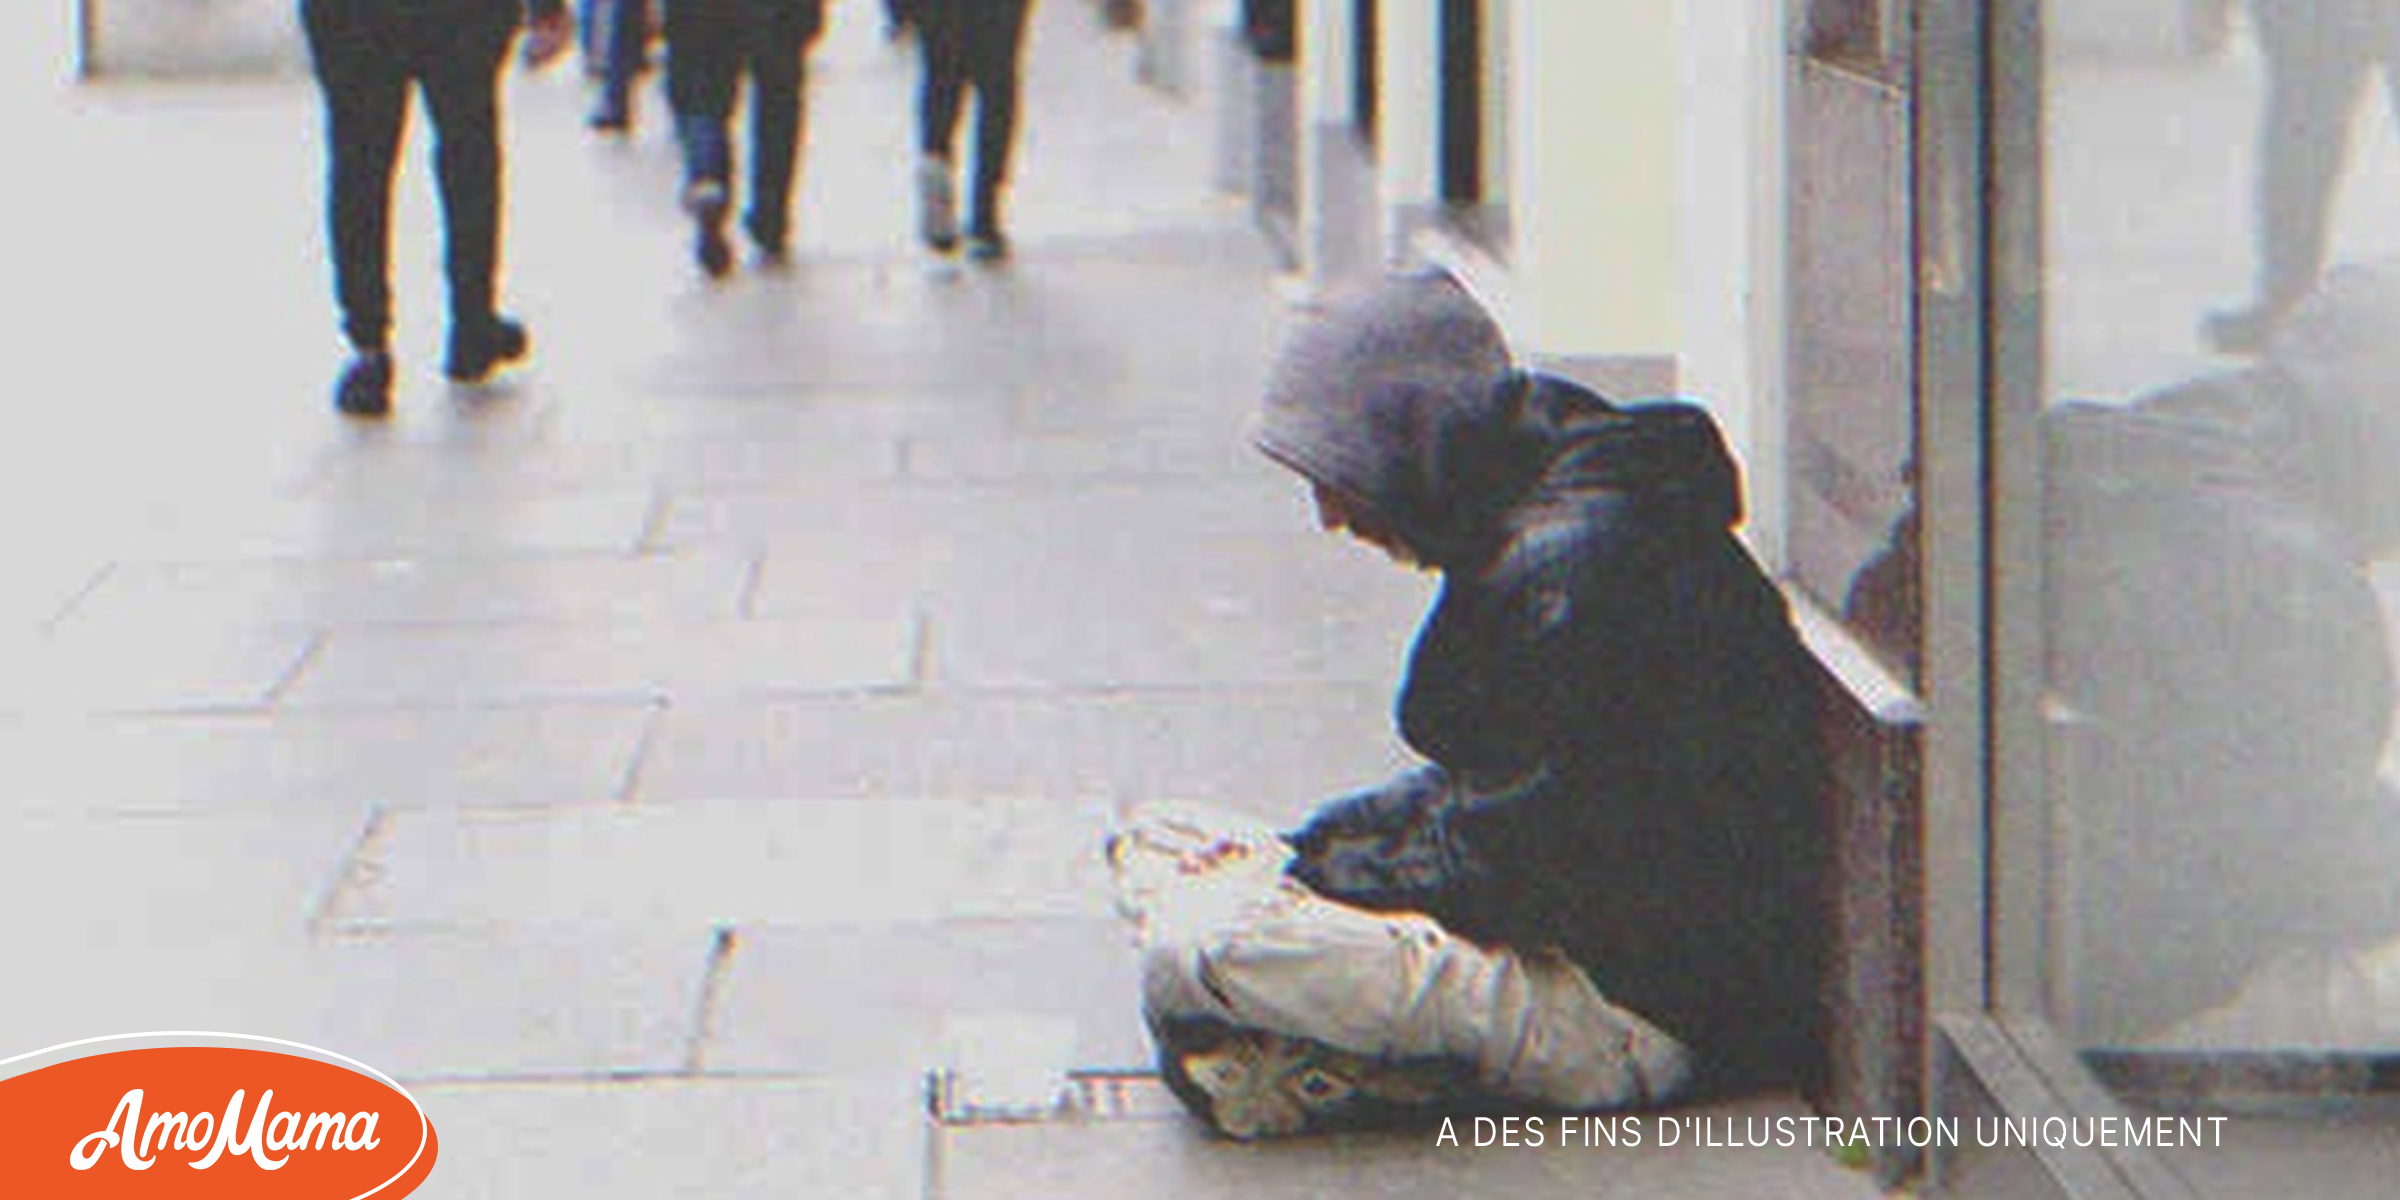 Une jeune femme en larmes jette un billet à un mendiant, qui le déplie et voit écrit : “Aidez-moi” – Histoire du jour